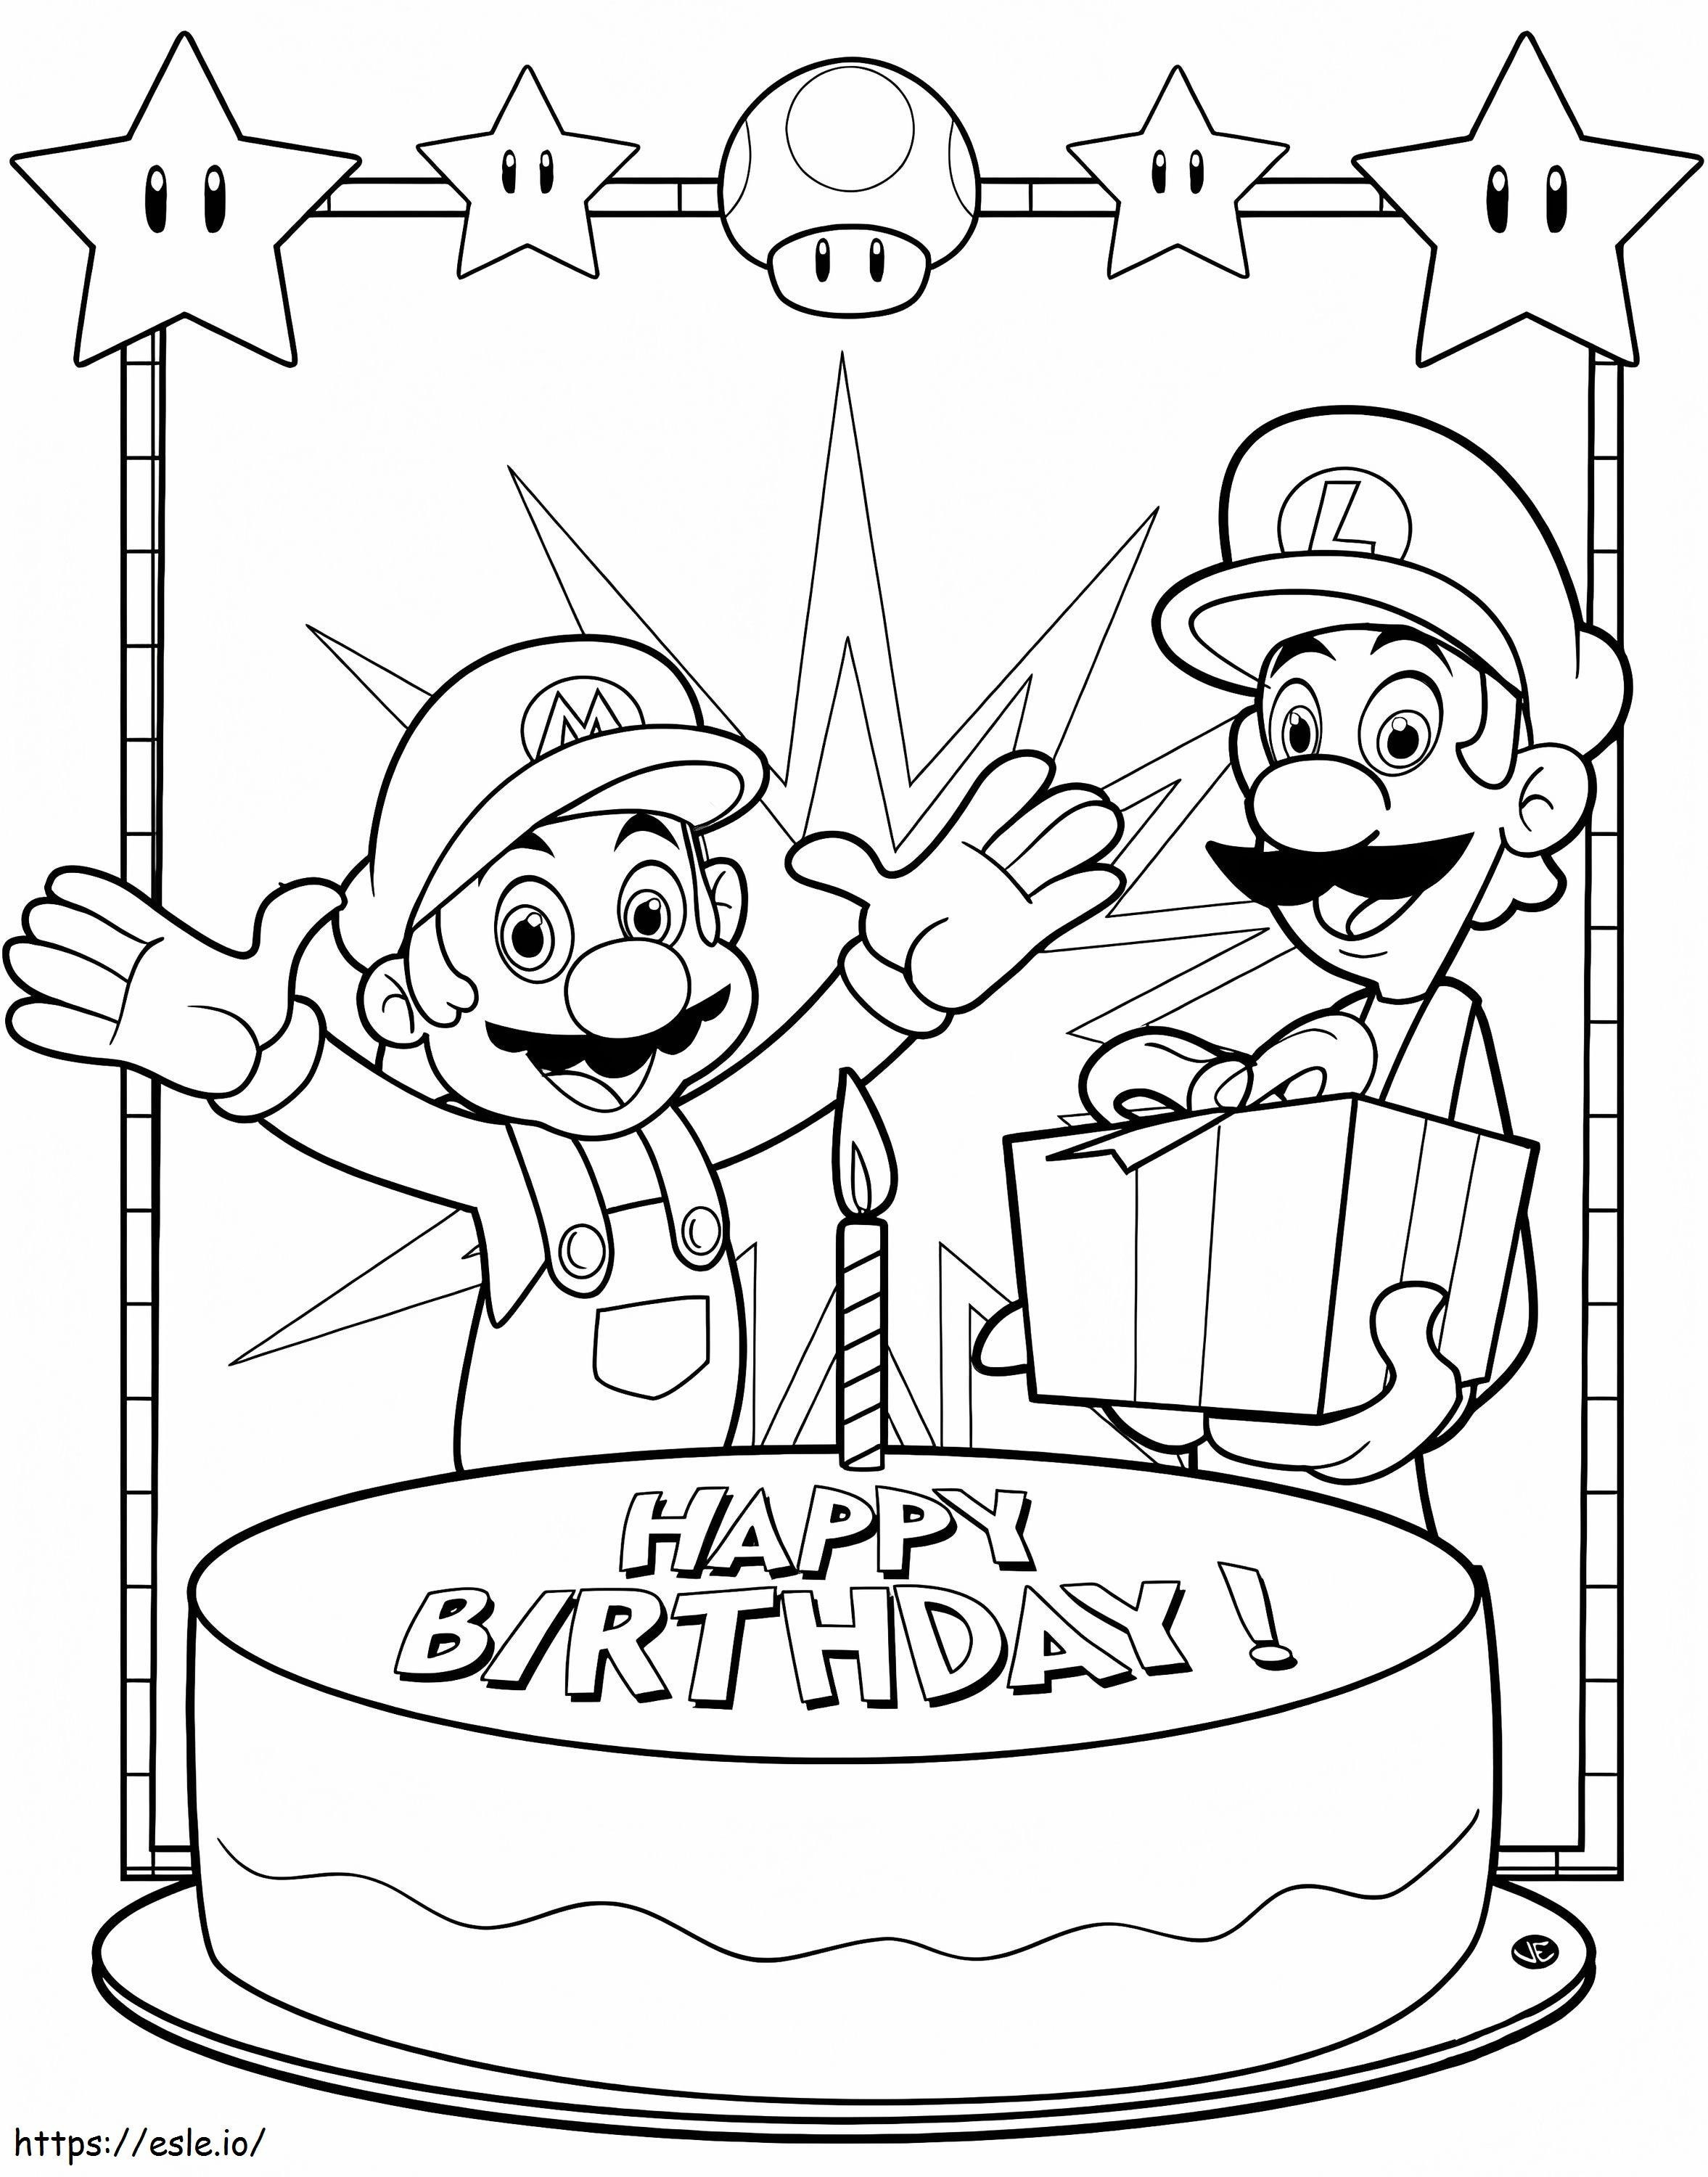 Alles Gute zum Geburtstag Mario ausmalbilder